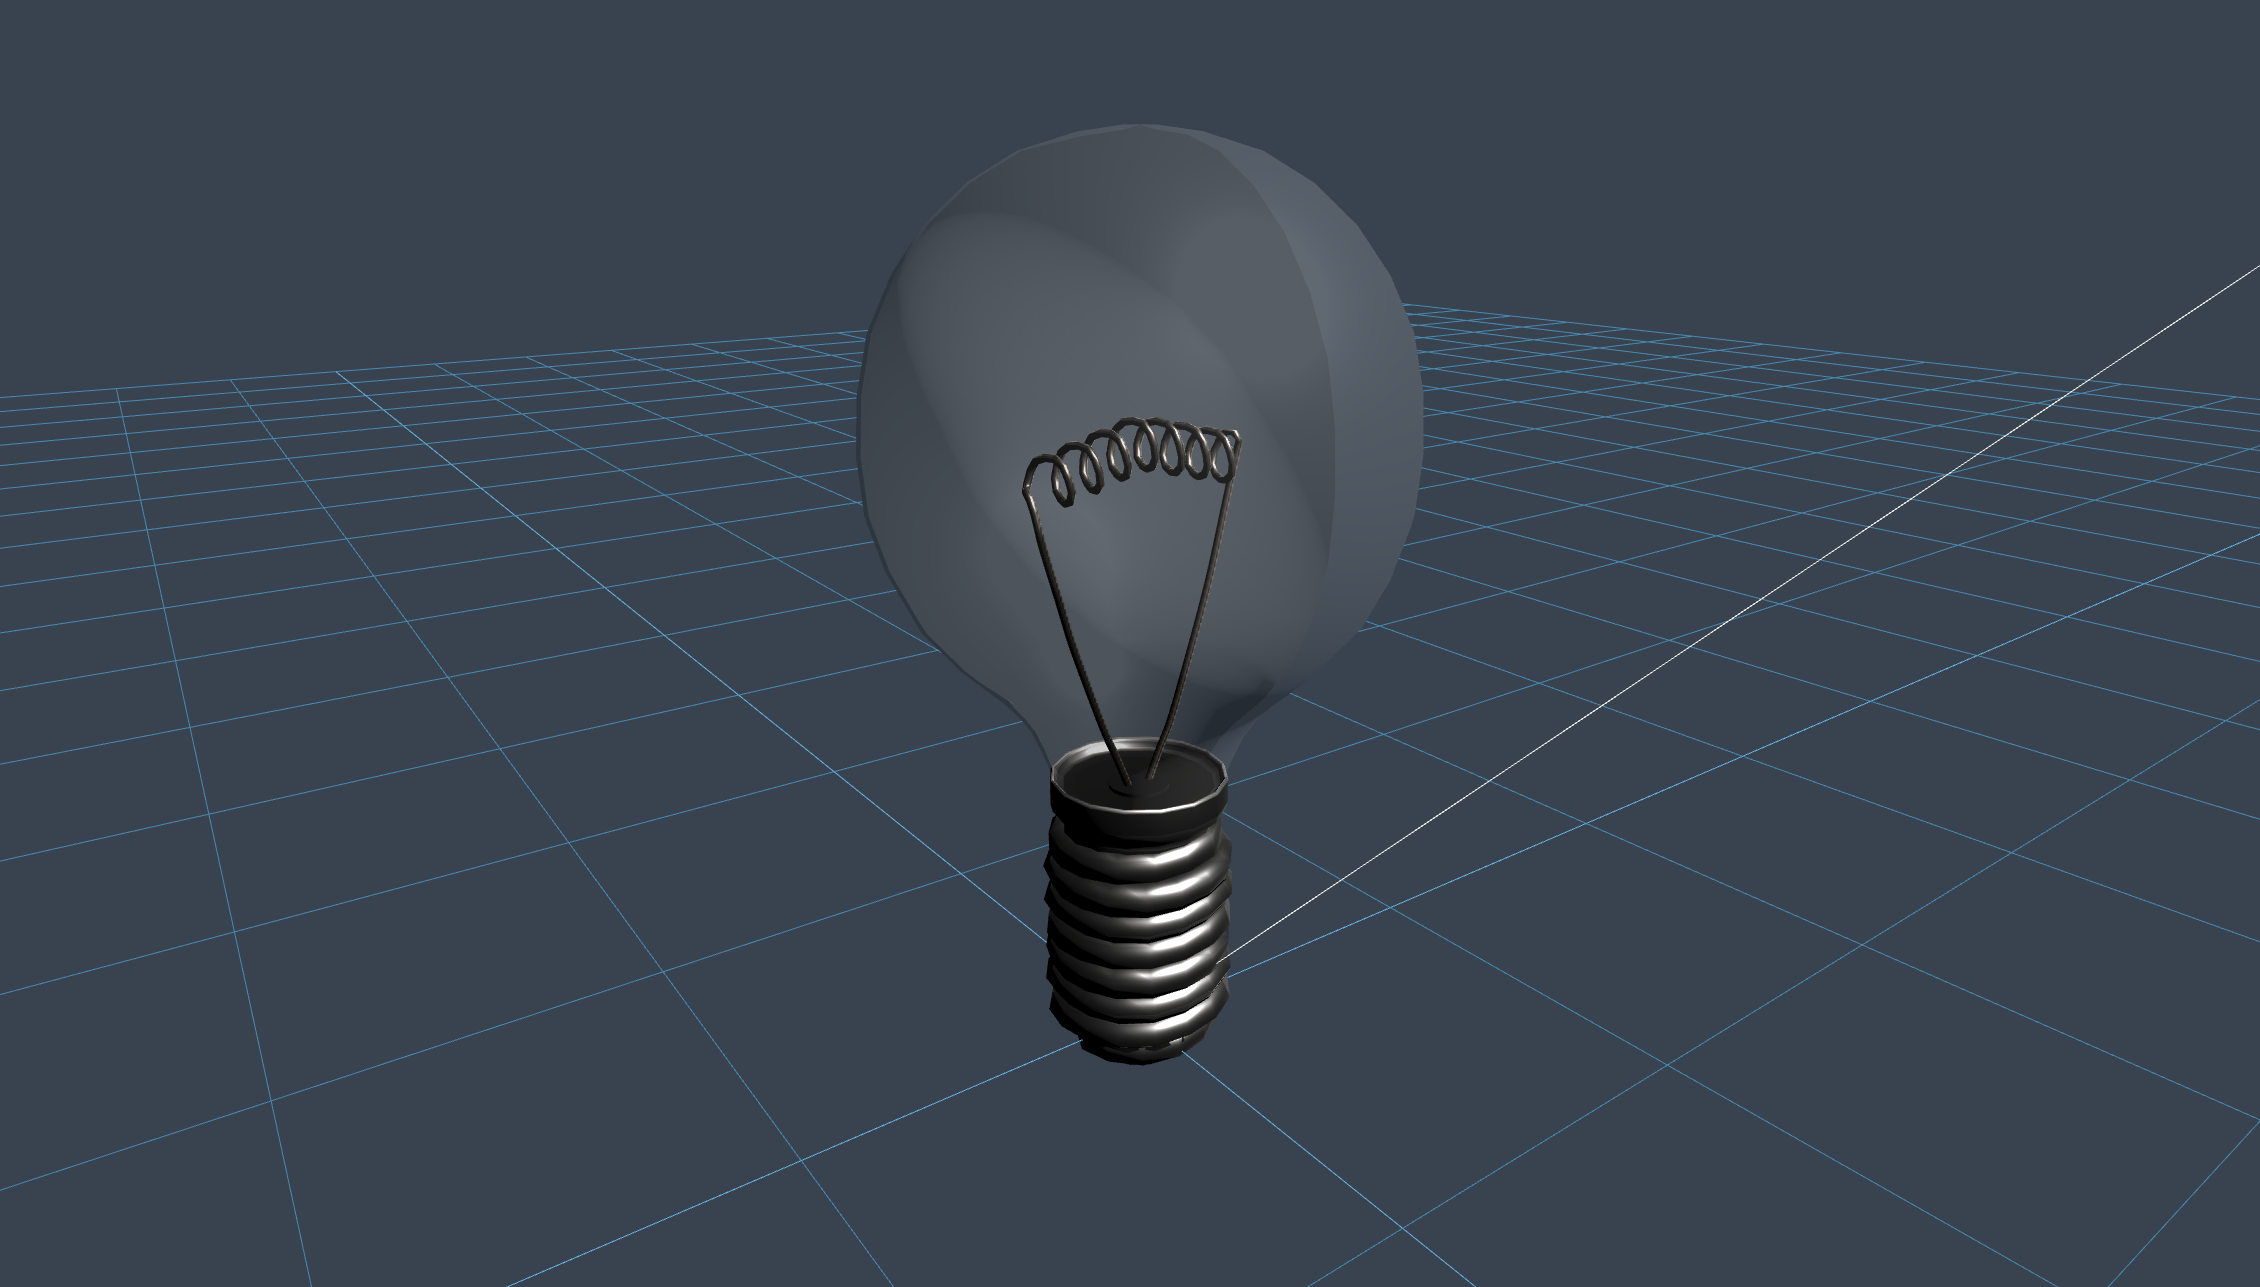 LightBulb - opprettet av Niilo Korppi med 3D